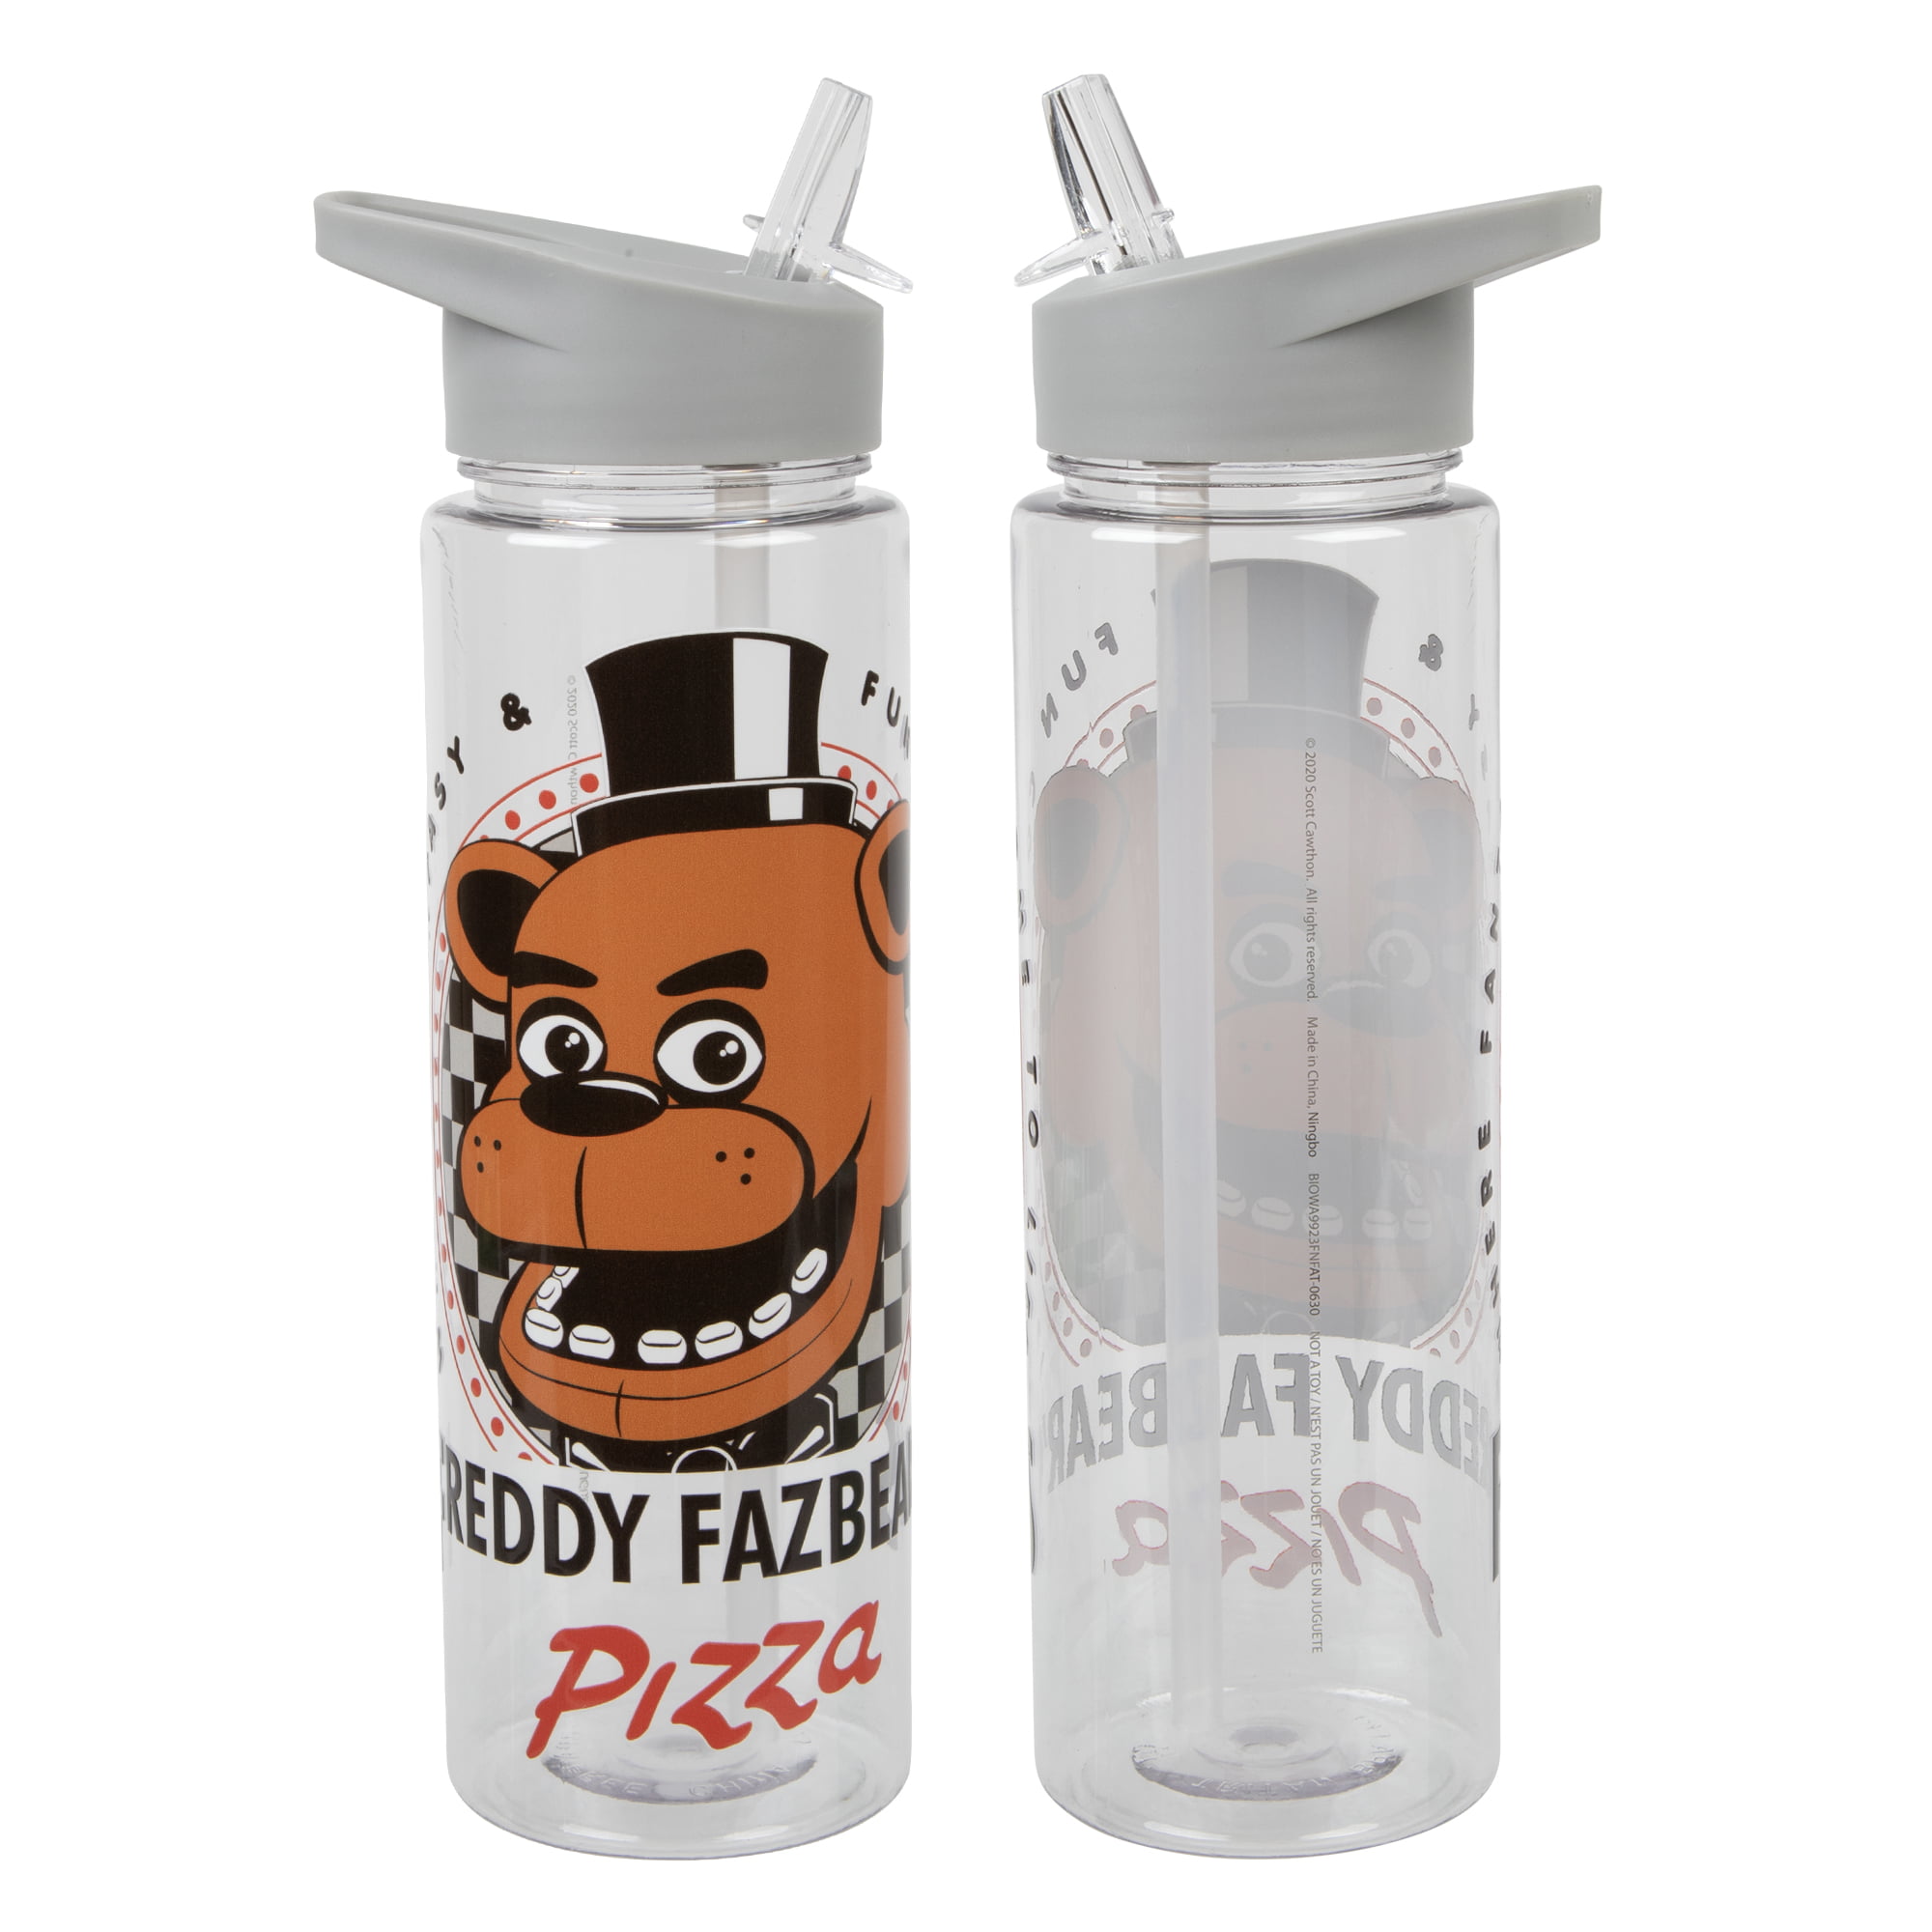 FNAF Five Nights at Freddy's - Freddy Fazbear's Pizza 24 oz. Water